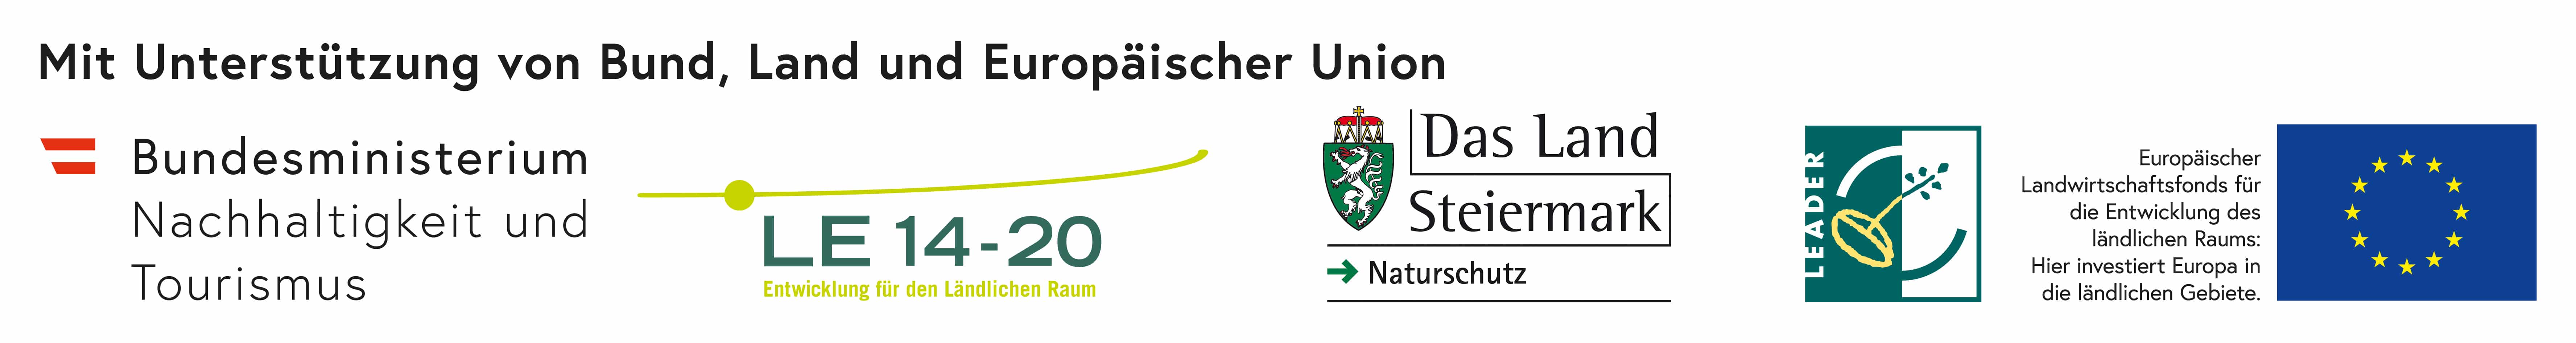 Logoleiste mit den Unterstützern: Bundesministerium, LE 14-20, Land Steiermark, Leader und EU